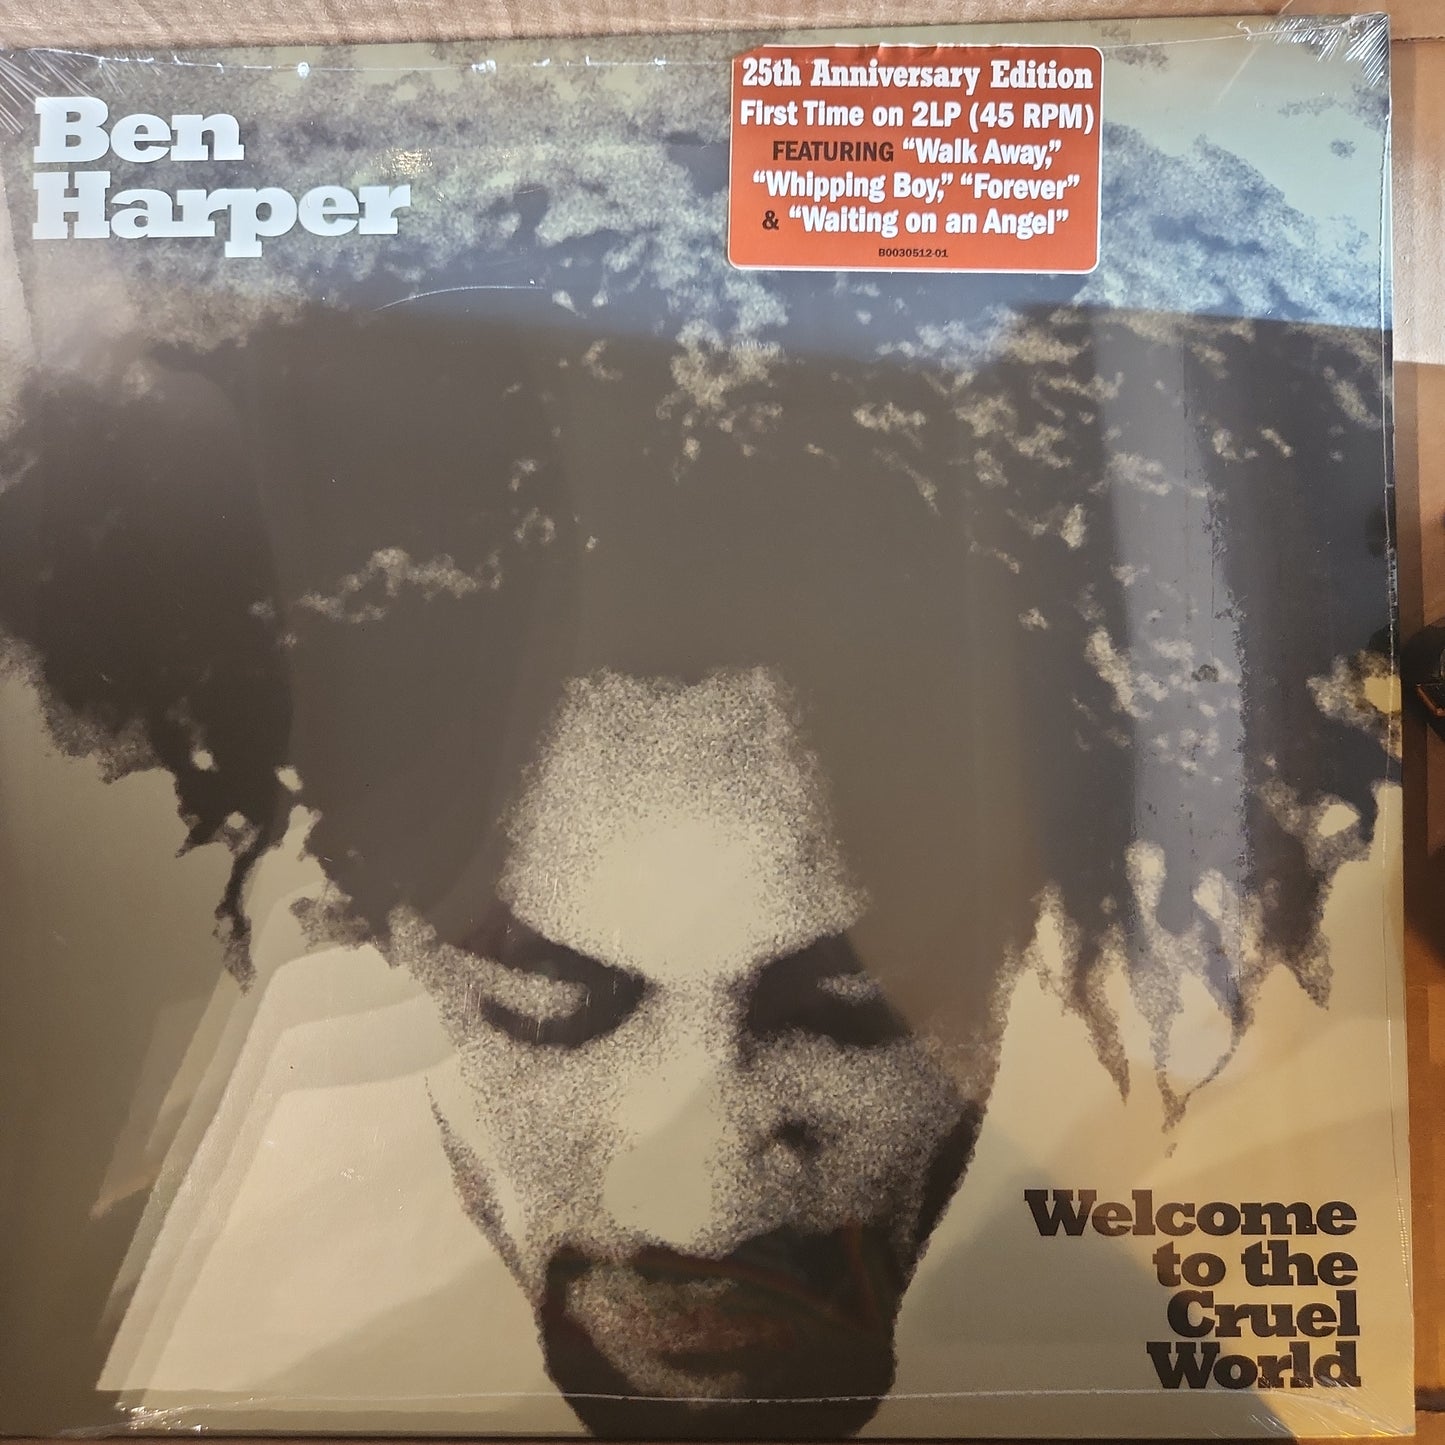 Ben Harper - Welcome to the Cruel World - Vinyl LP